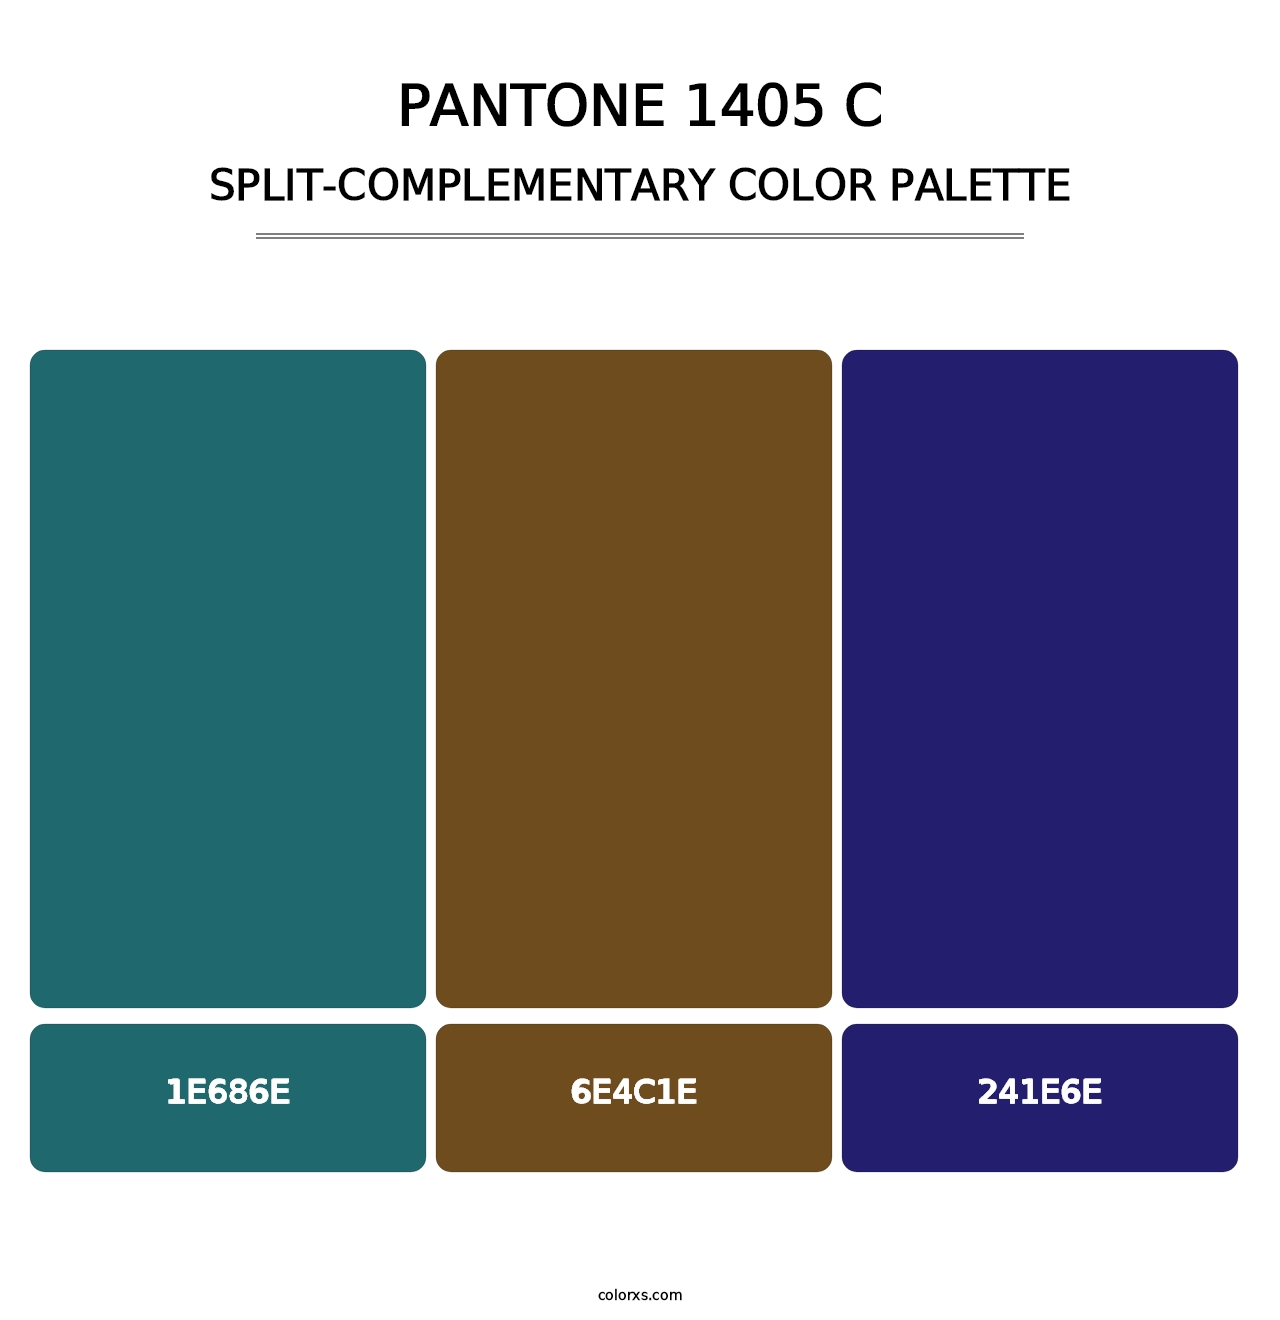 PANTONE 1405 C - Split-Complementary Color Palette